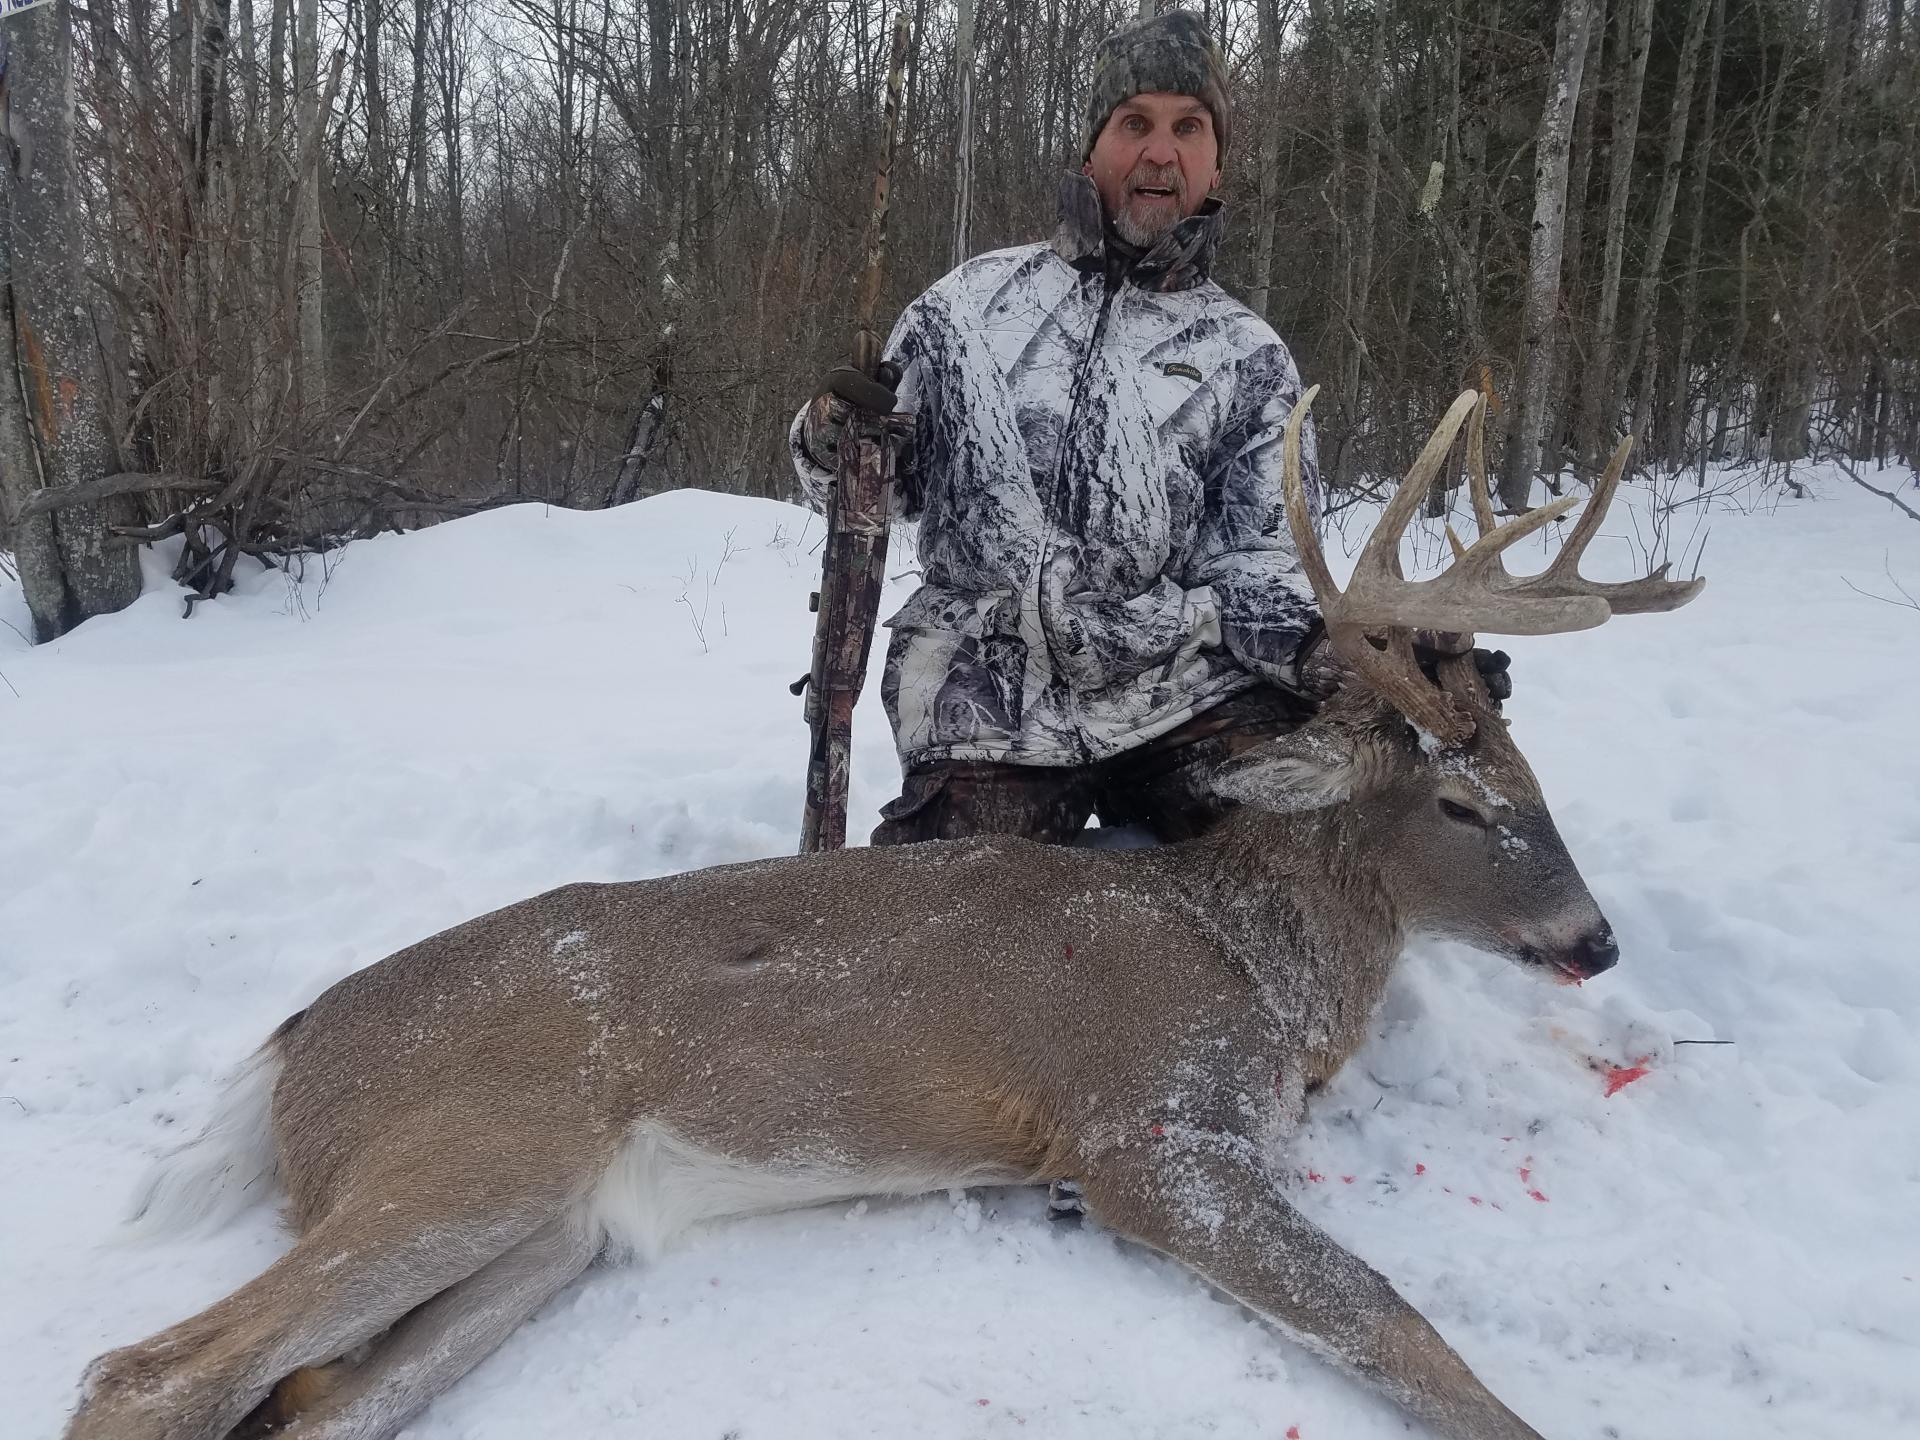 Whitetail Deer hunting preserve in Pennsylvania, archery deer hunting